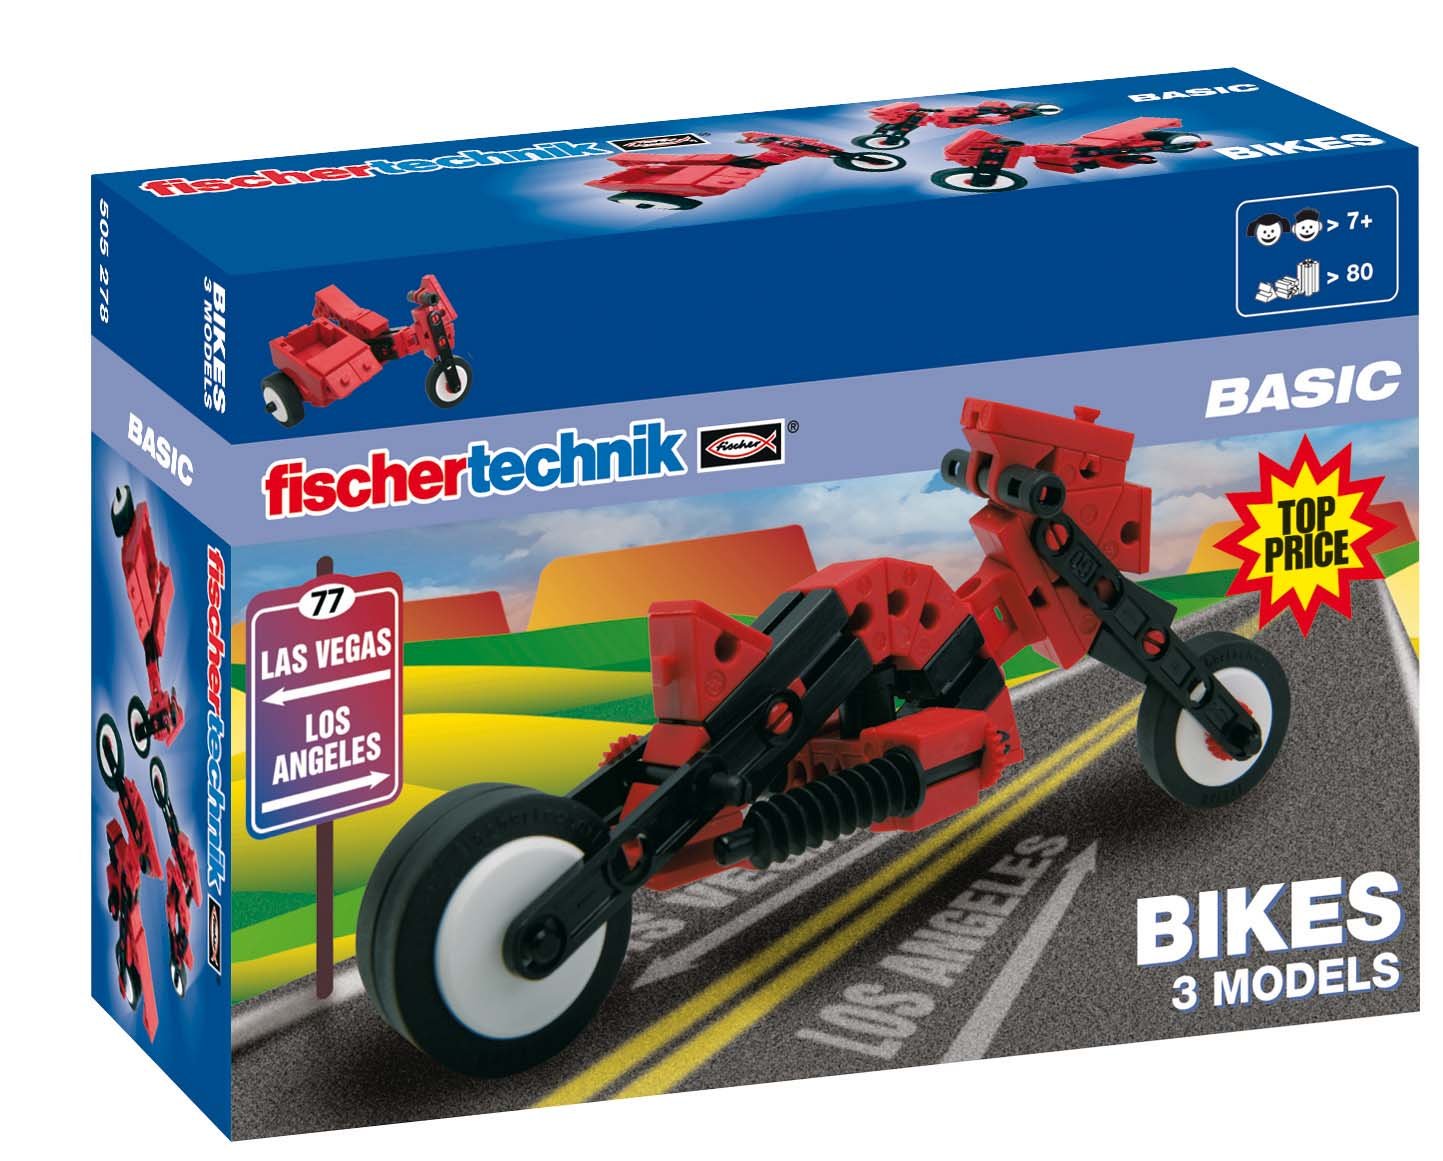 Fischertechnik Basic Bikes